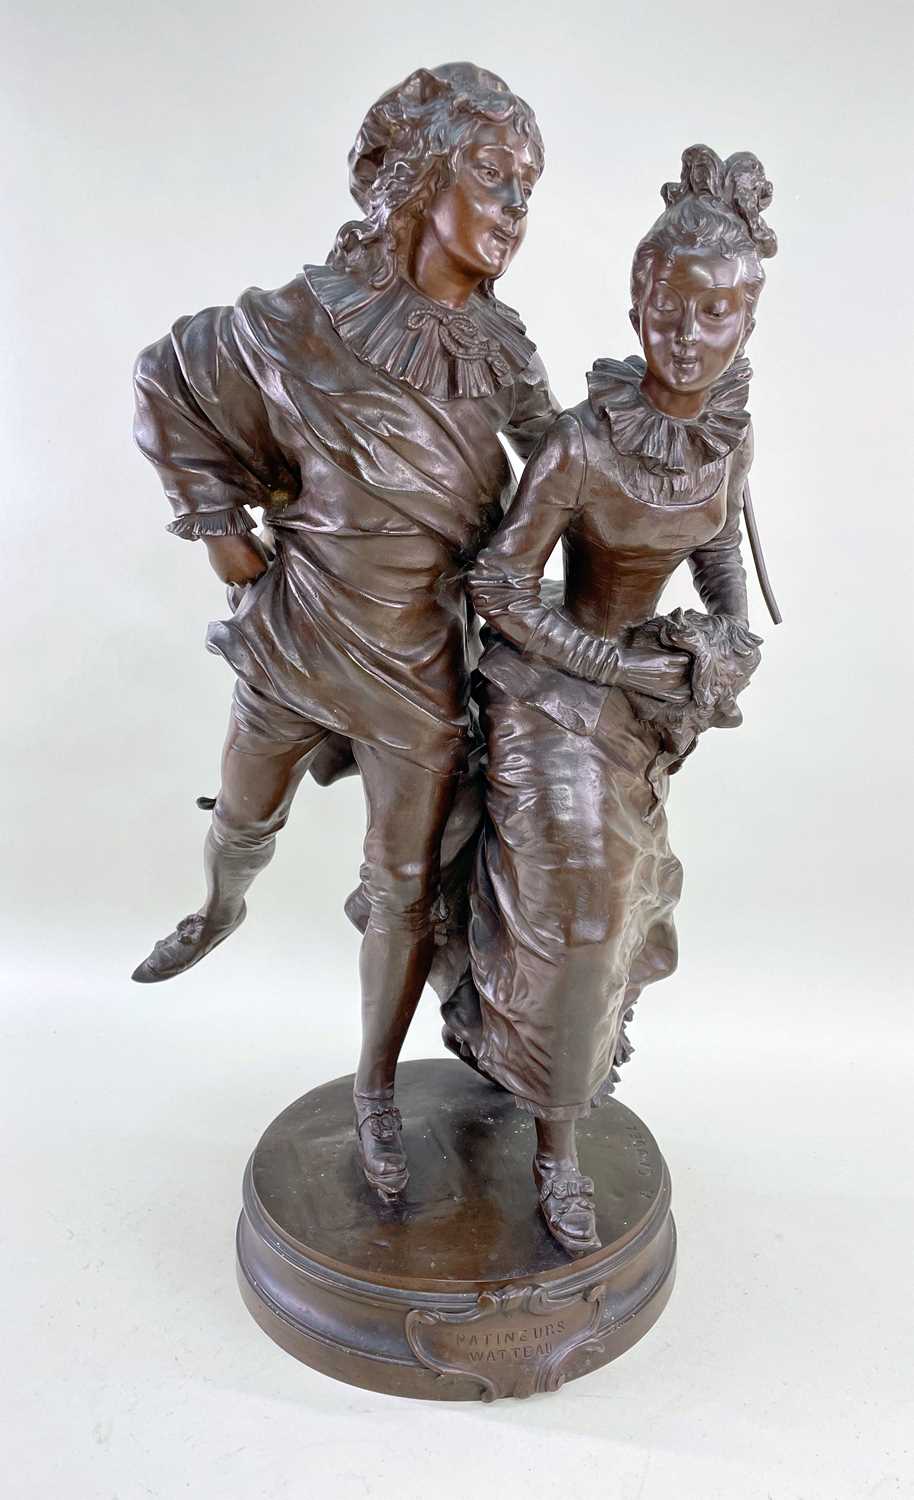 ADRIEN-ETIENNE GAUDEZ bronze - Patineurs Watteau, sculpture of a young belle epoque couple ice